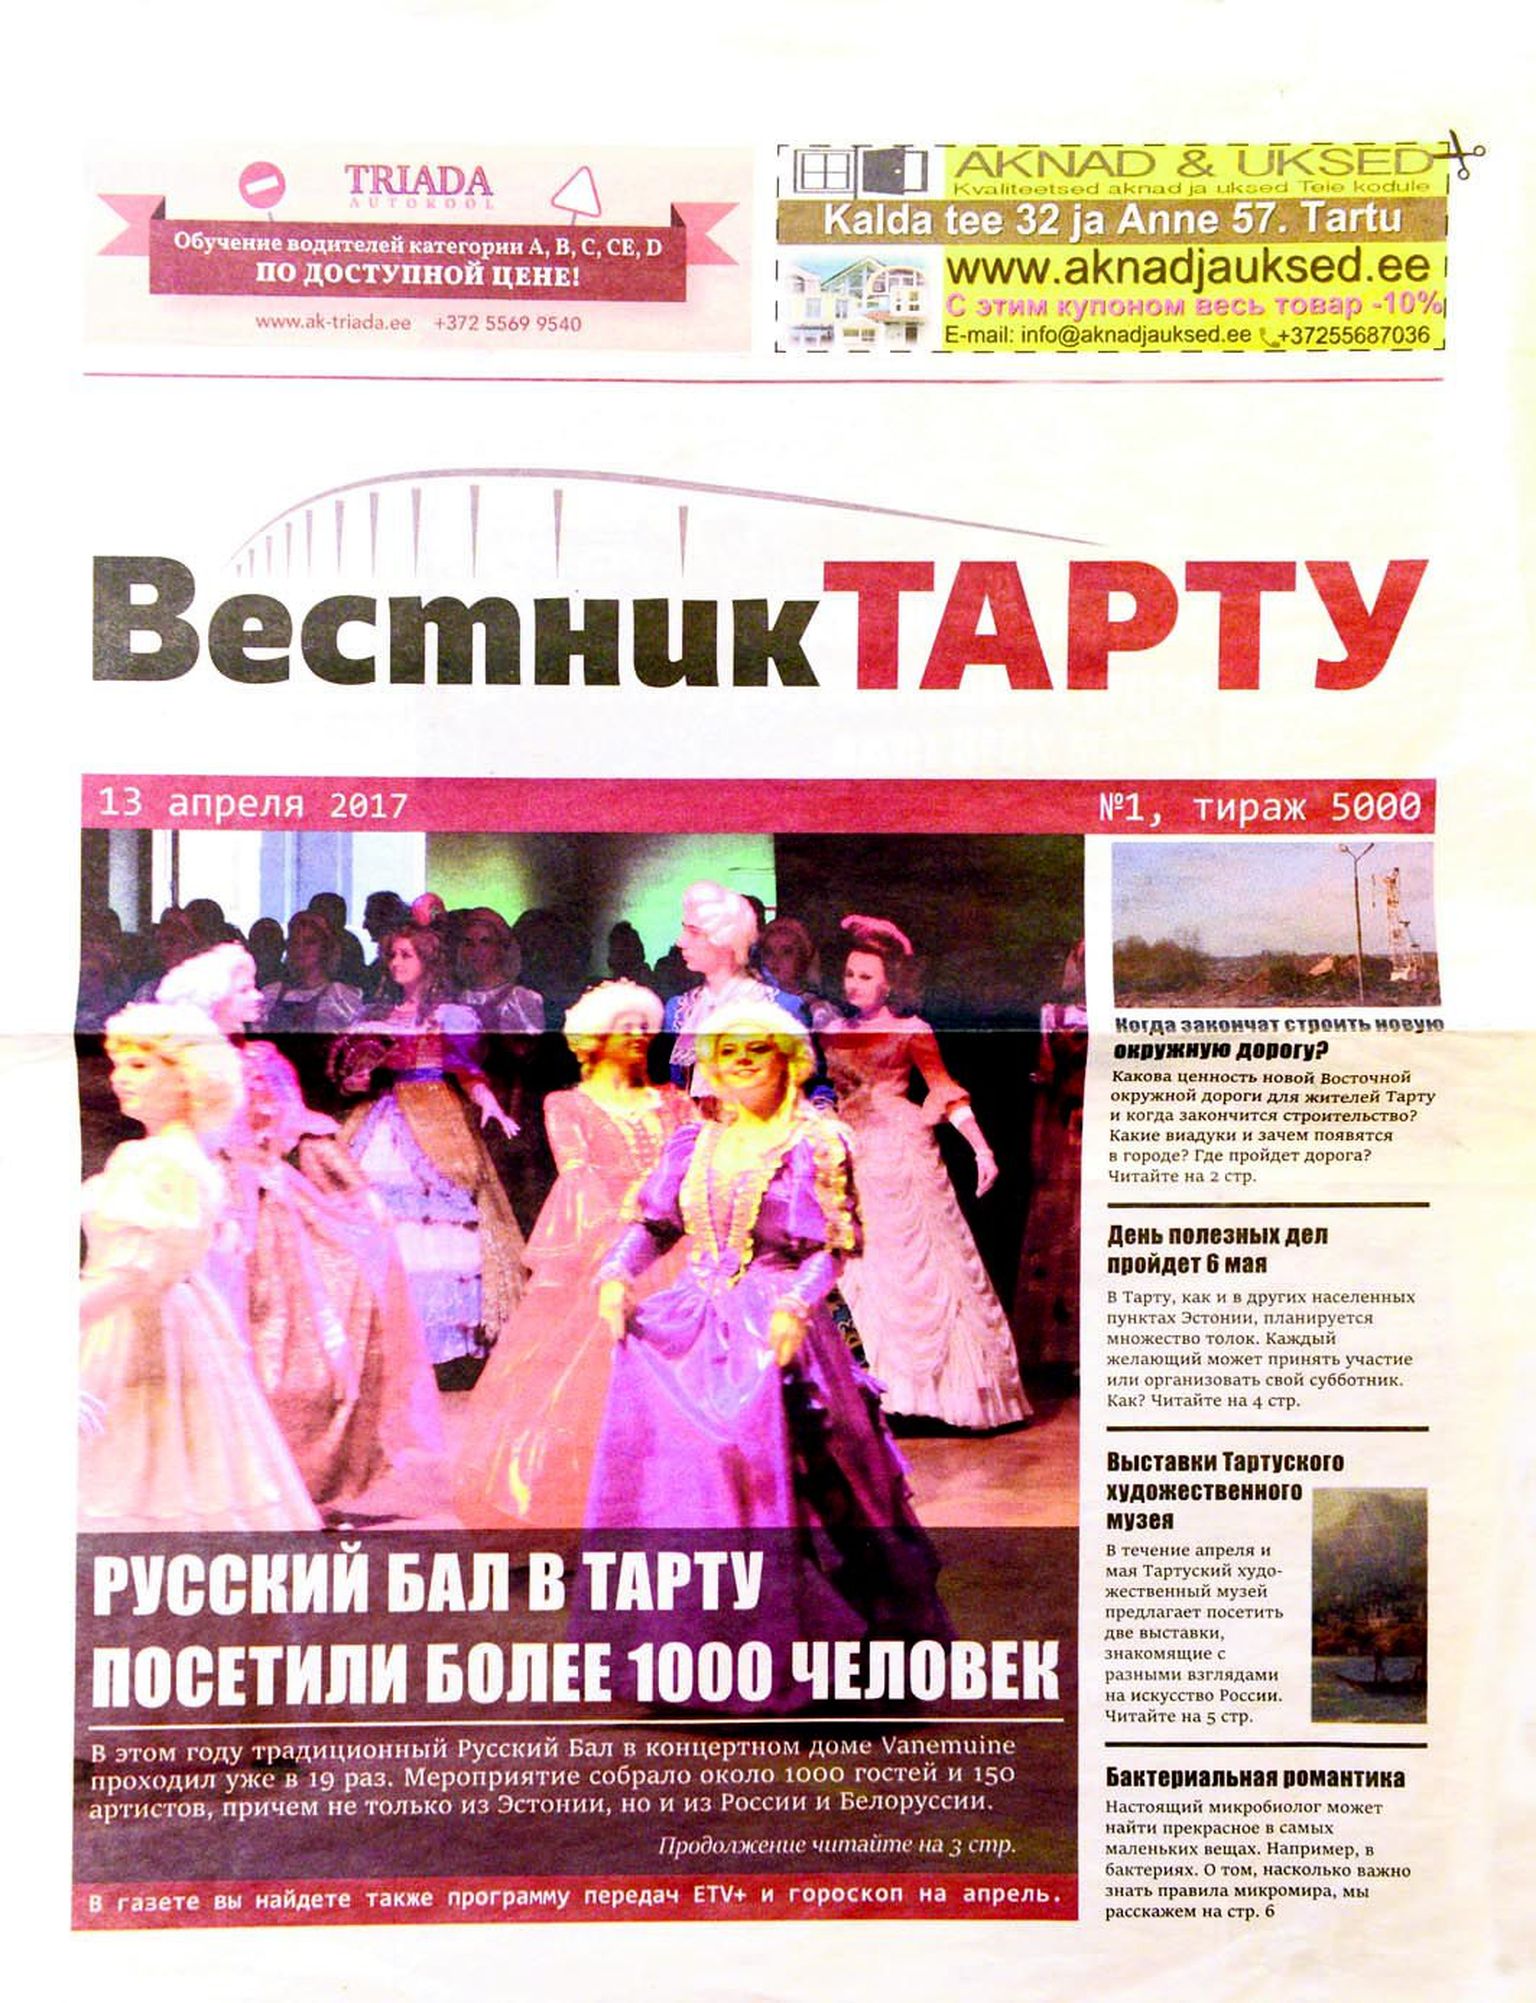 Esimene Vestnik Tartu number ilmus 13. aprillil. Selle tiraaž oli 5000. Leht peaks lugejate ette tulema kaks korda kuus.